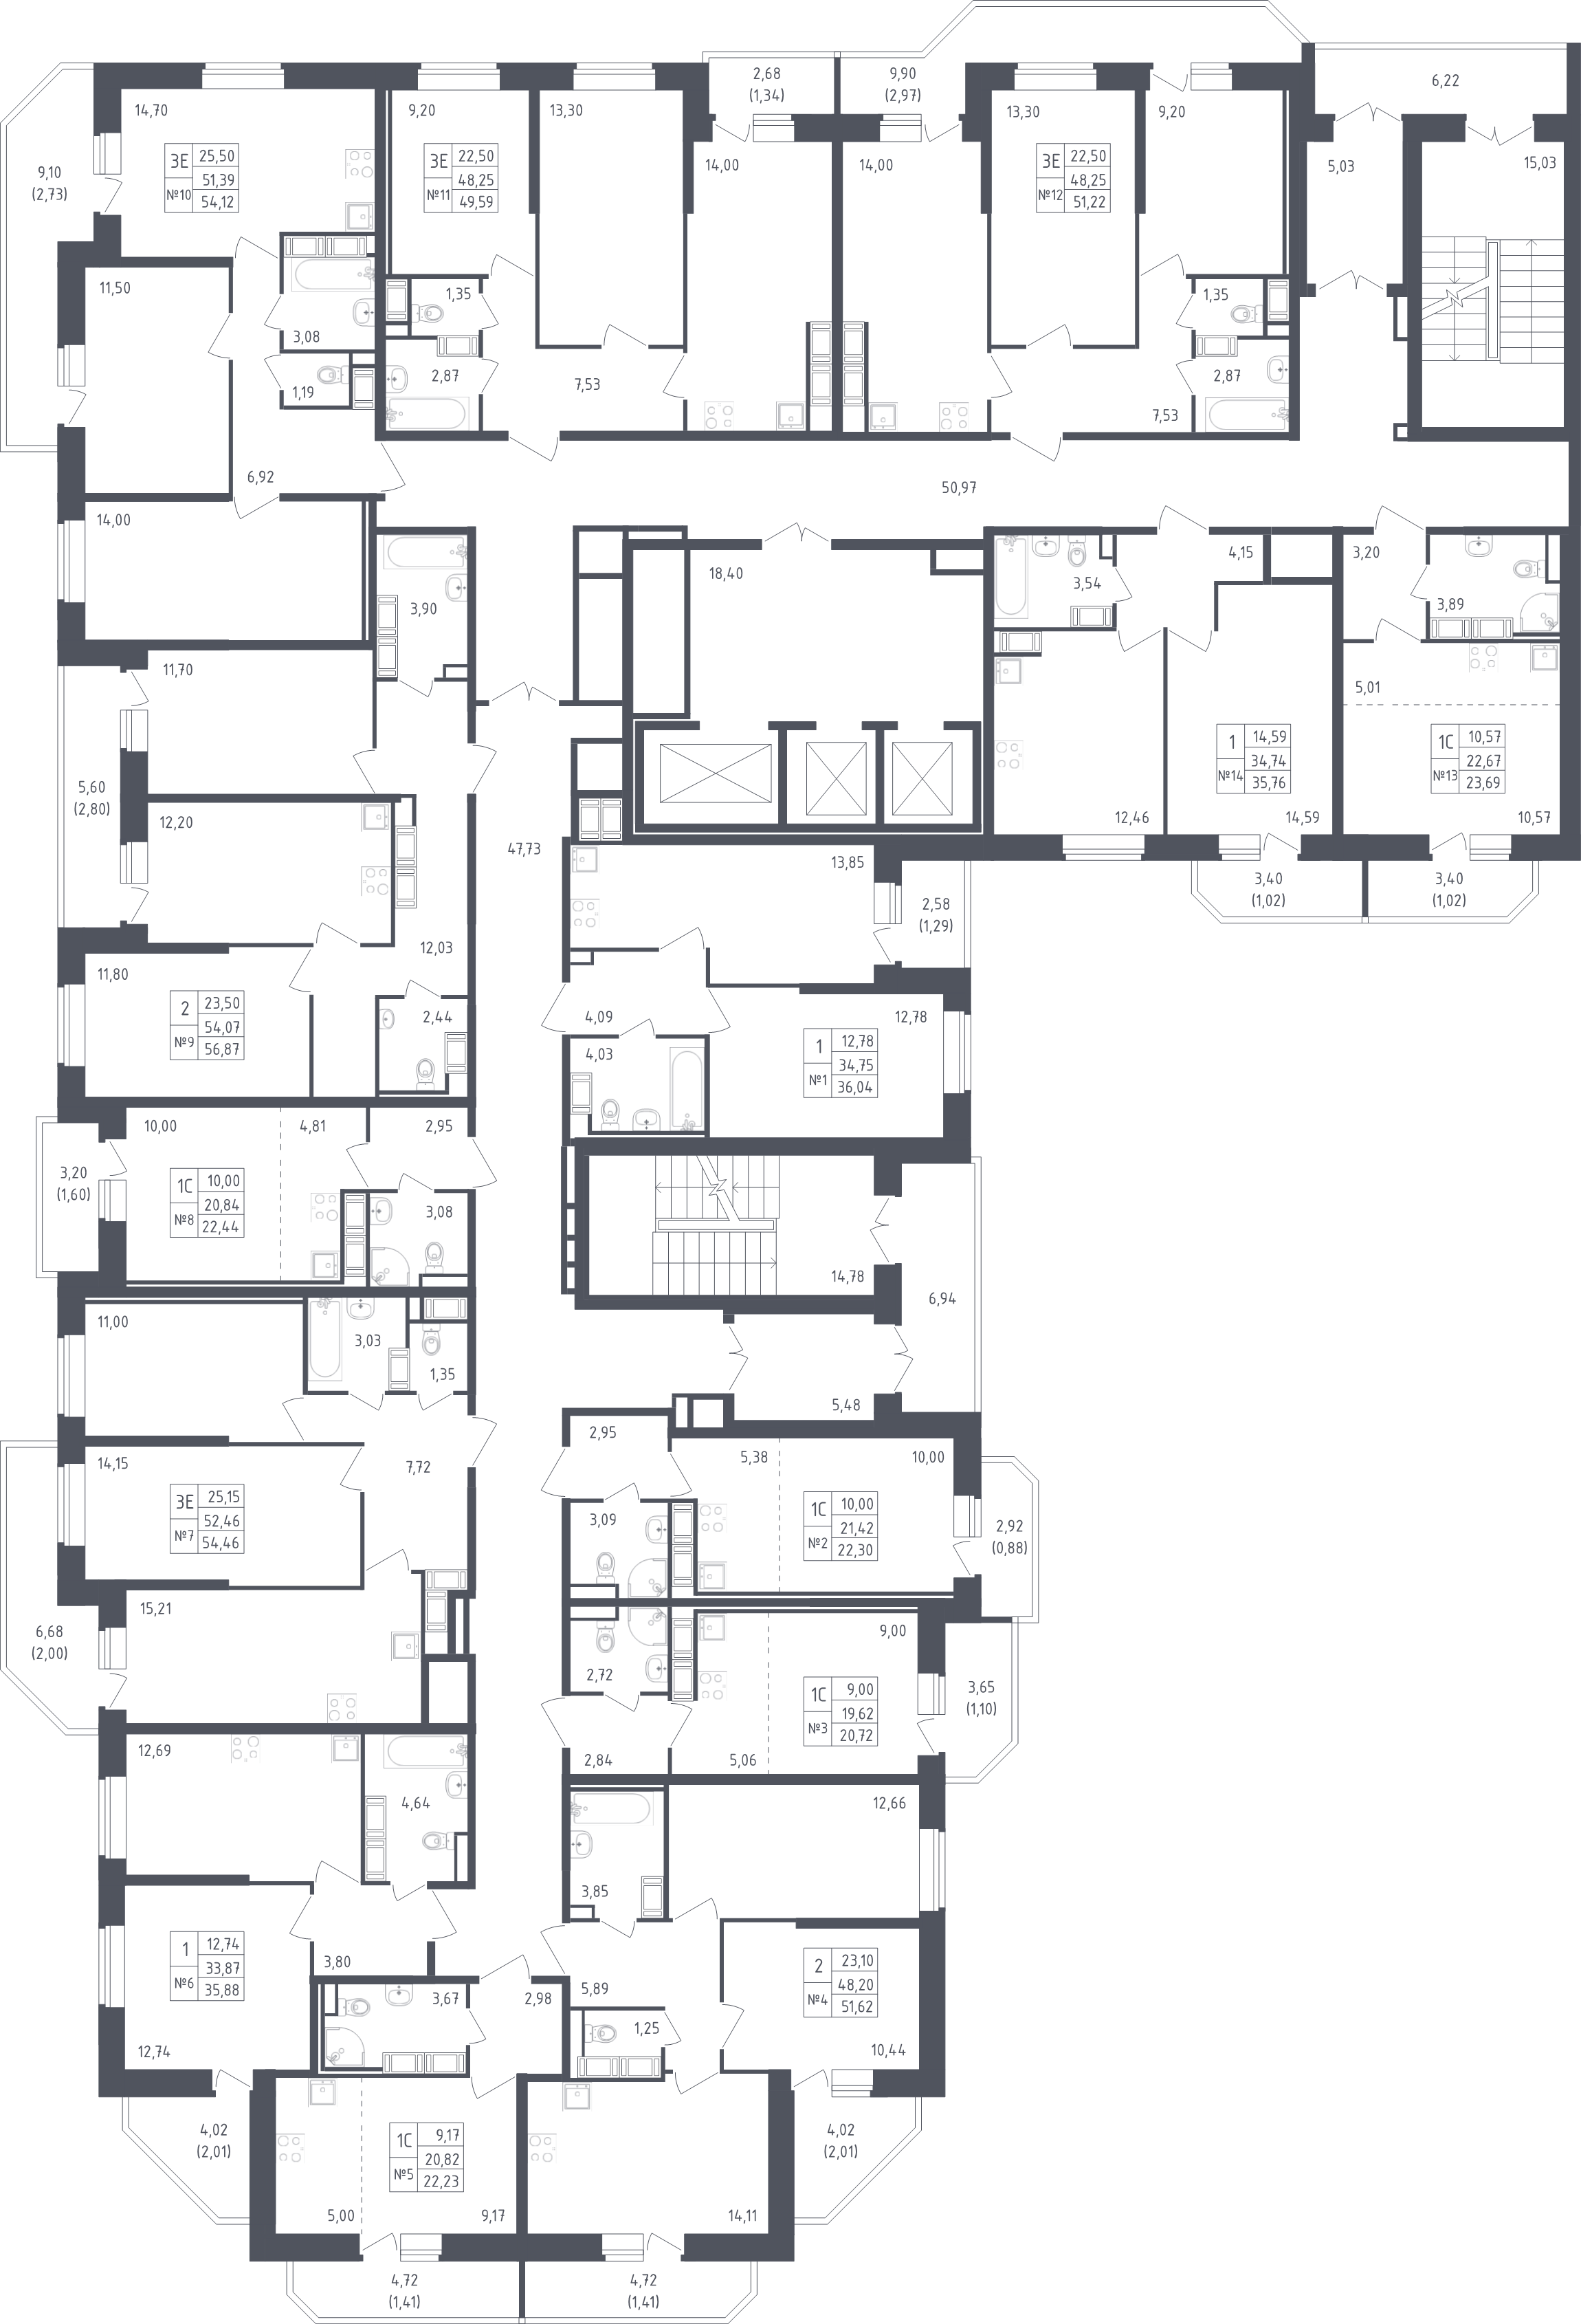 1-комнатная квартира, 35.76 м² - планировка этажа